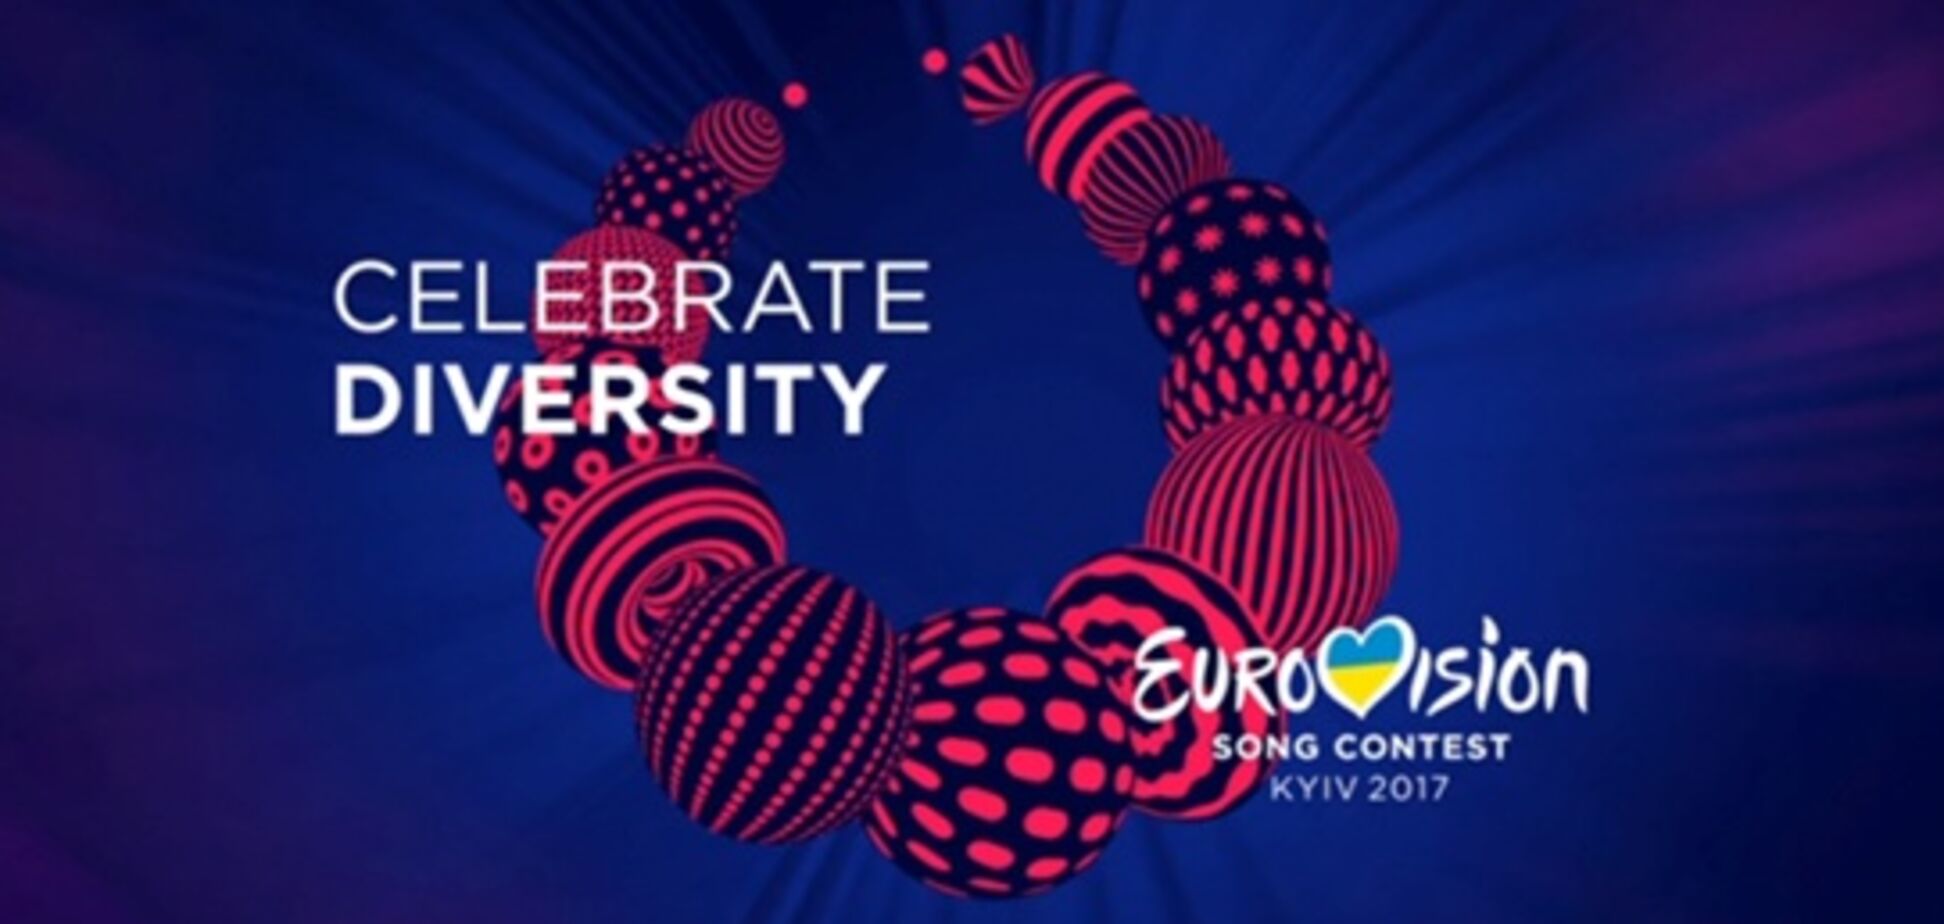 Лиев: во время 'Евровидения-2017' обнаружены нарушения на сумму в 100 раз меньше той, которую сообщили СМИ